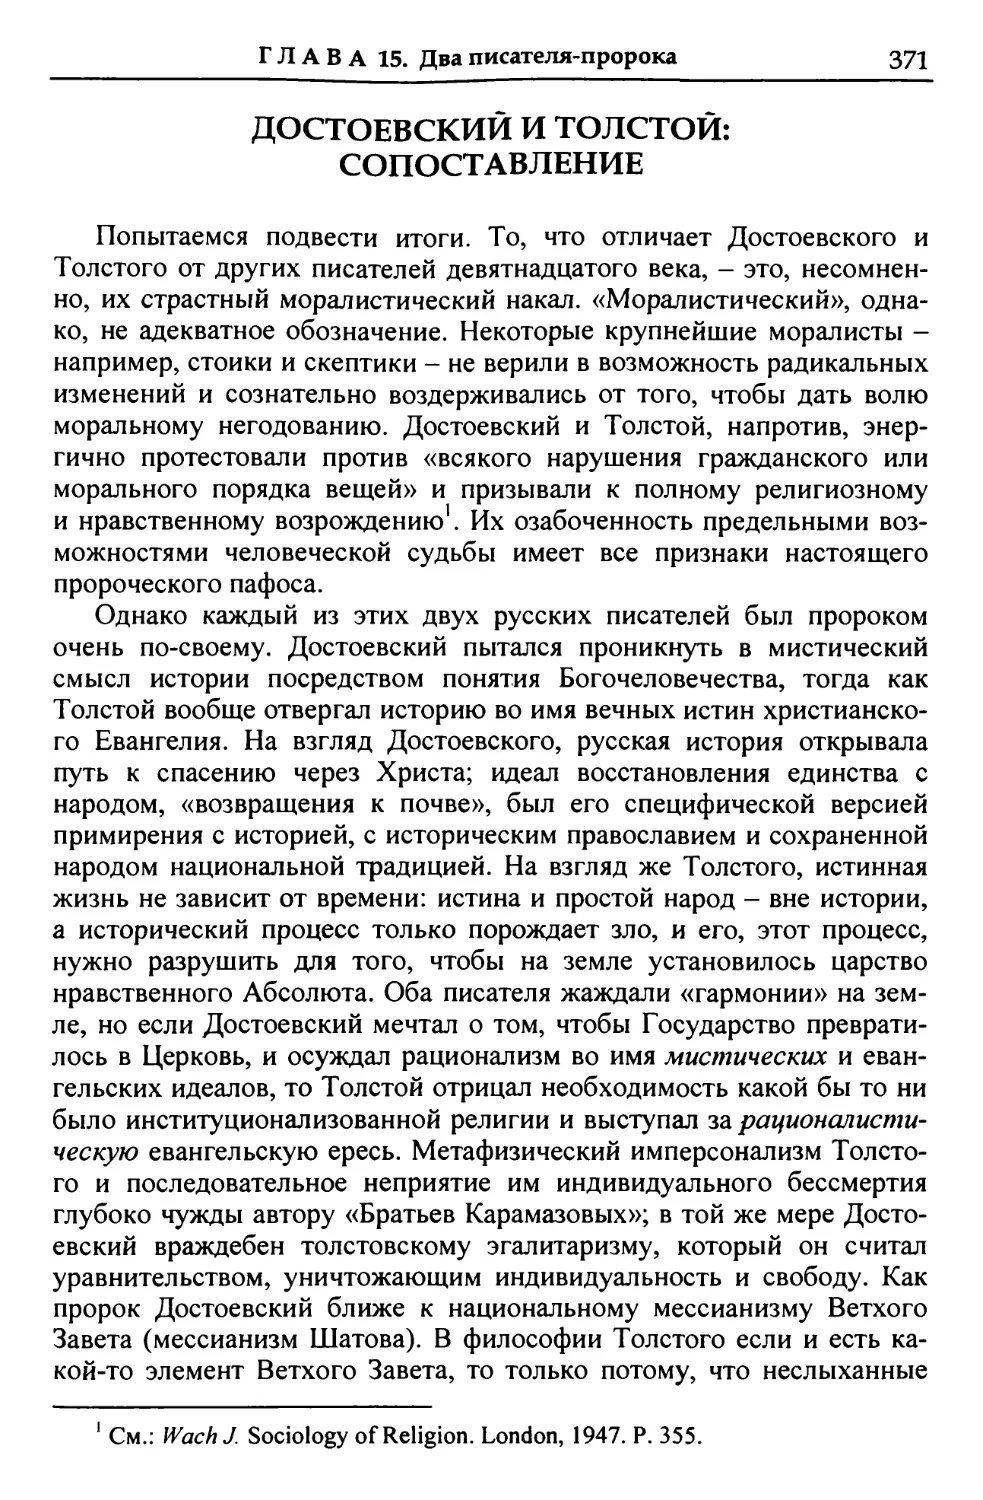 Достоевский и Толстой: сопоставление